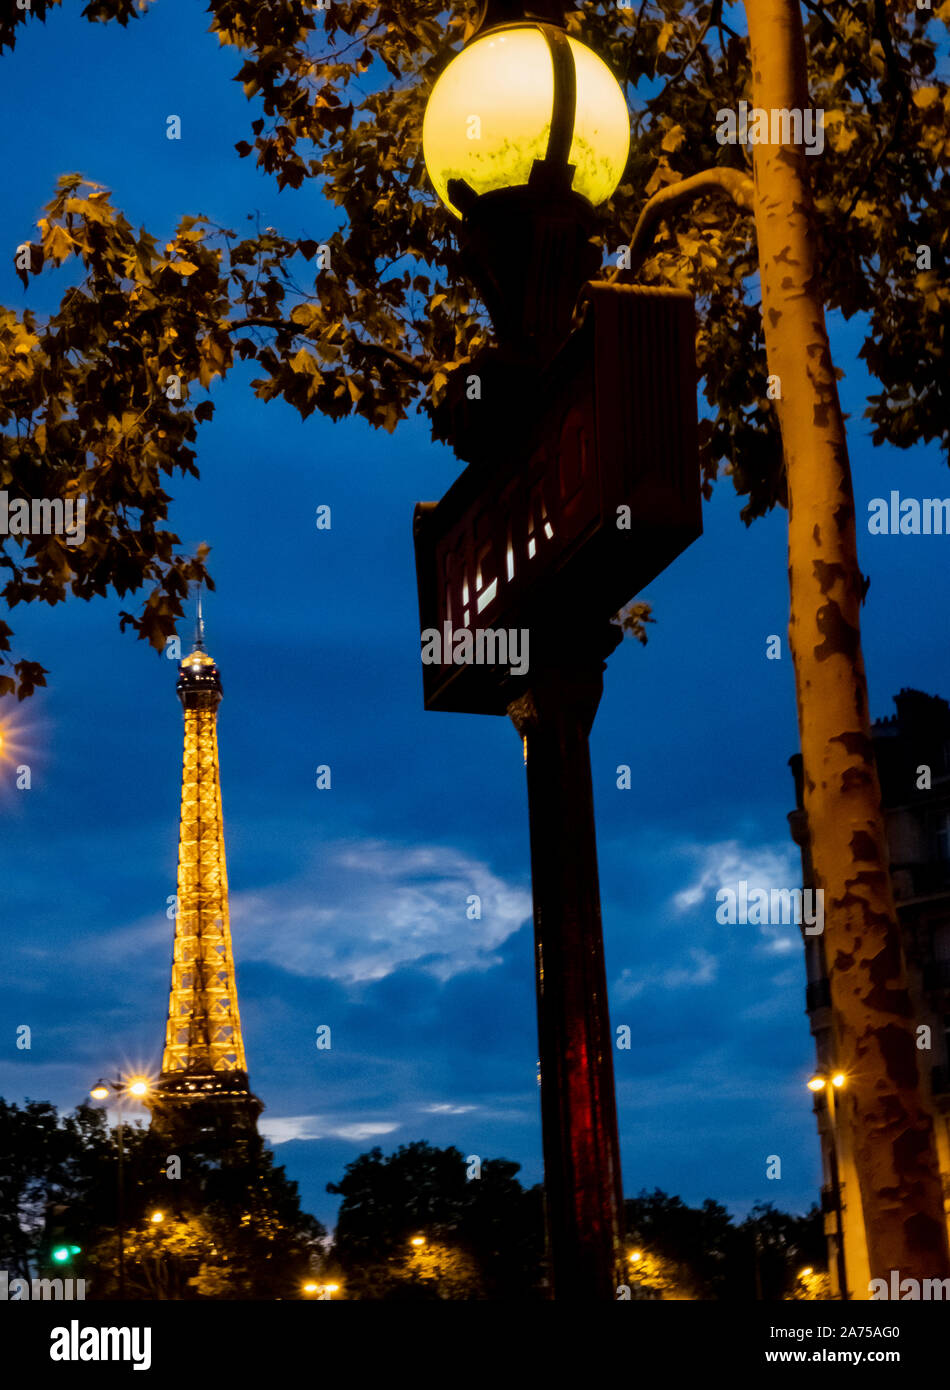 Un signe de métro art déco emblématique de l'autre côté de la Seine avec la Tour Eiffel en pleine lumière après le coucher du soleil Banque D'Images